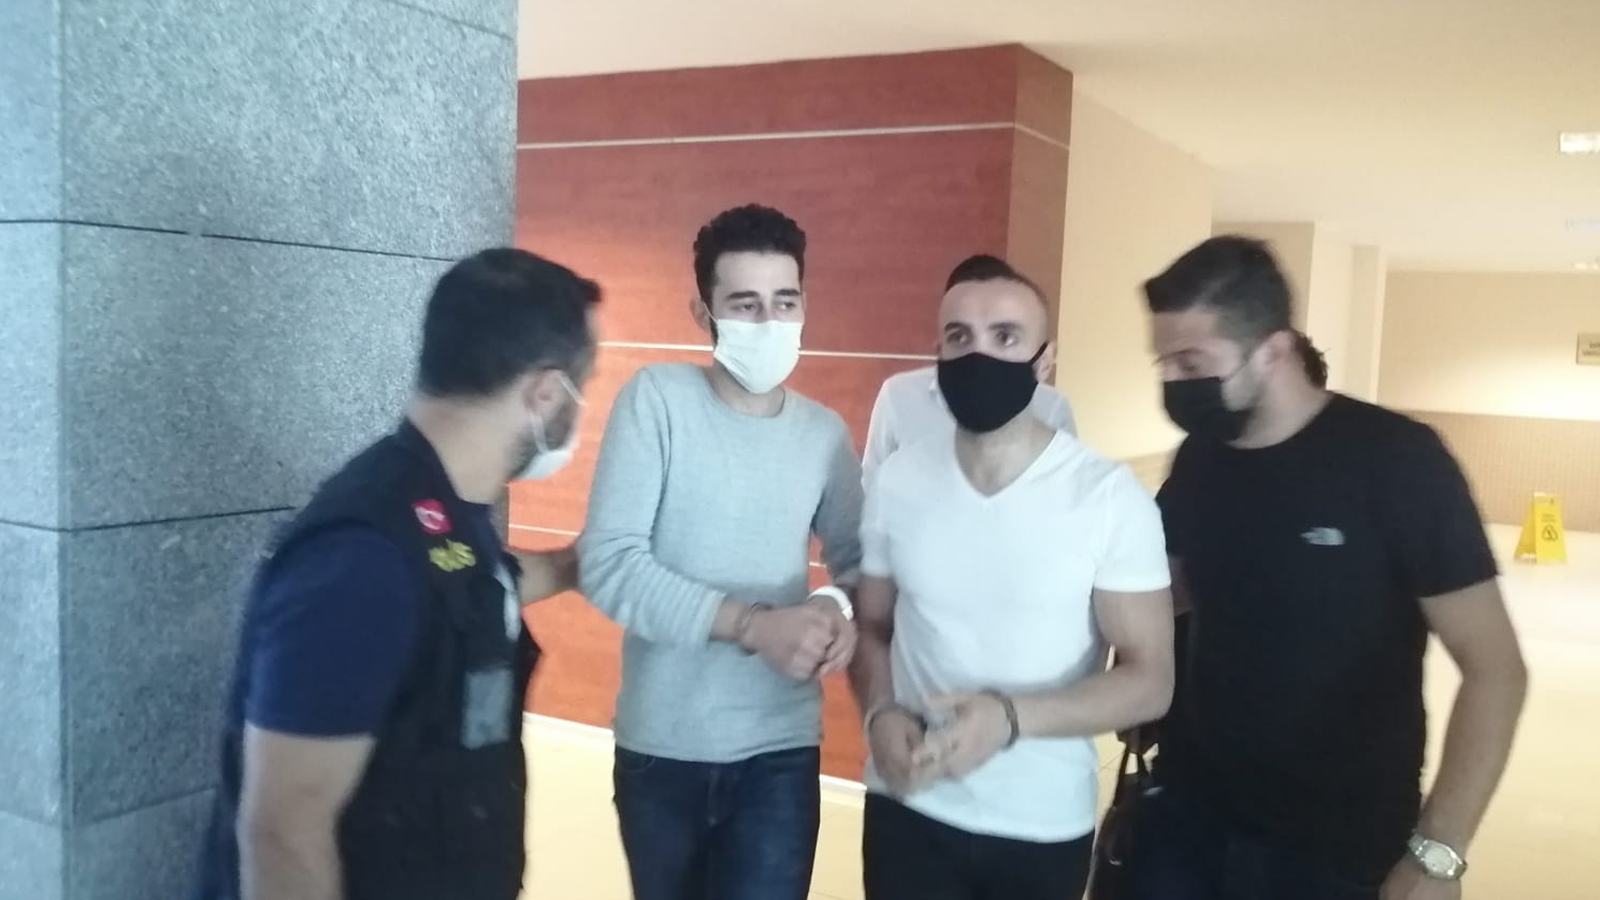 Türkiye İşçi Partisi milletvekili Barış Atay’a saldıran 3 kişi tutuklandı